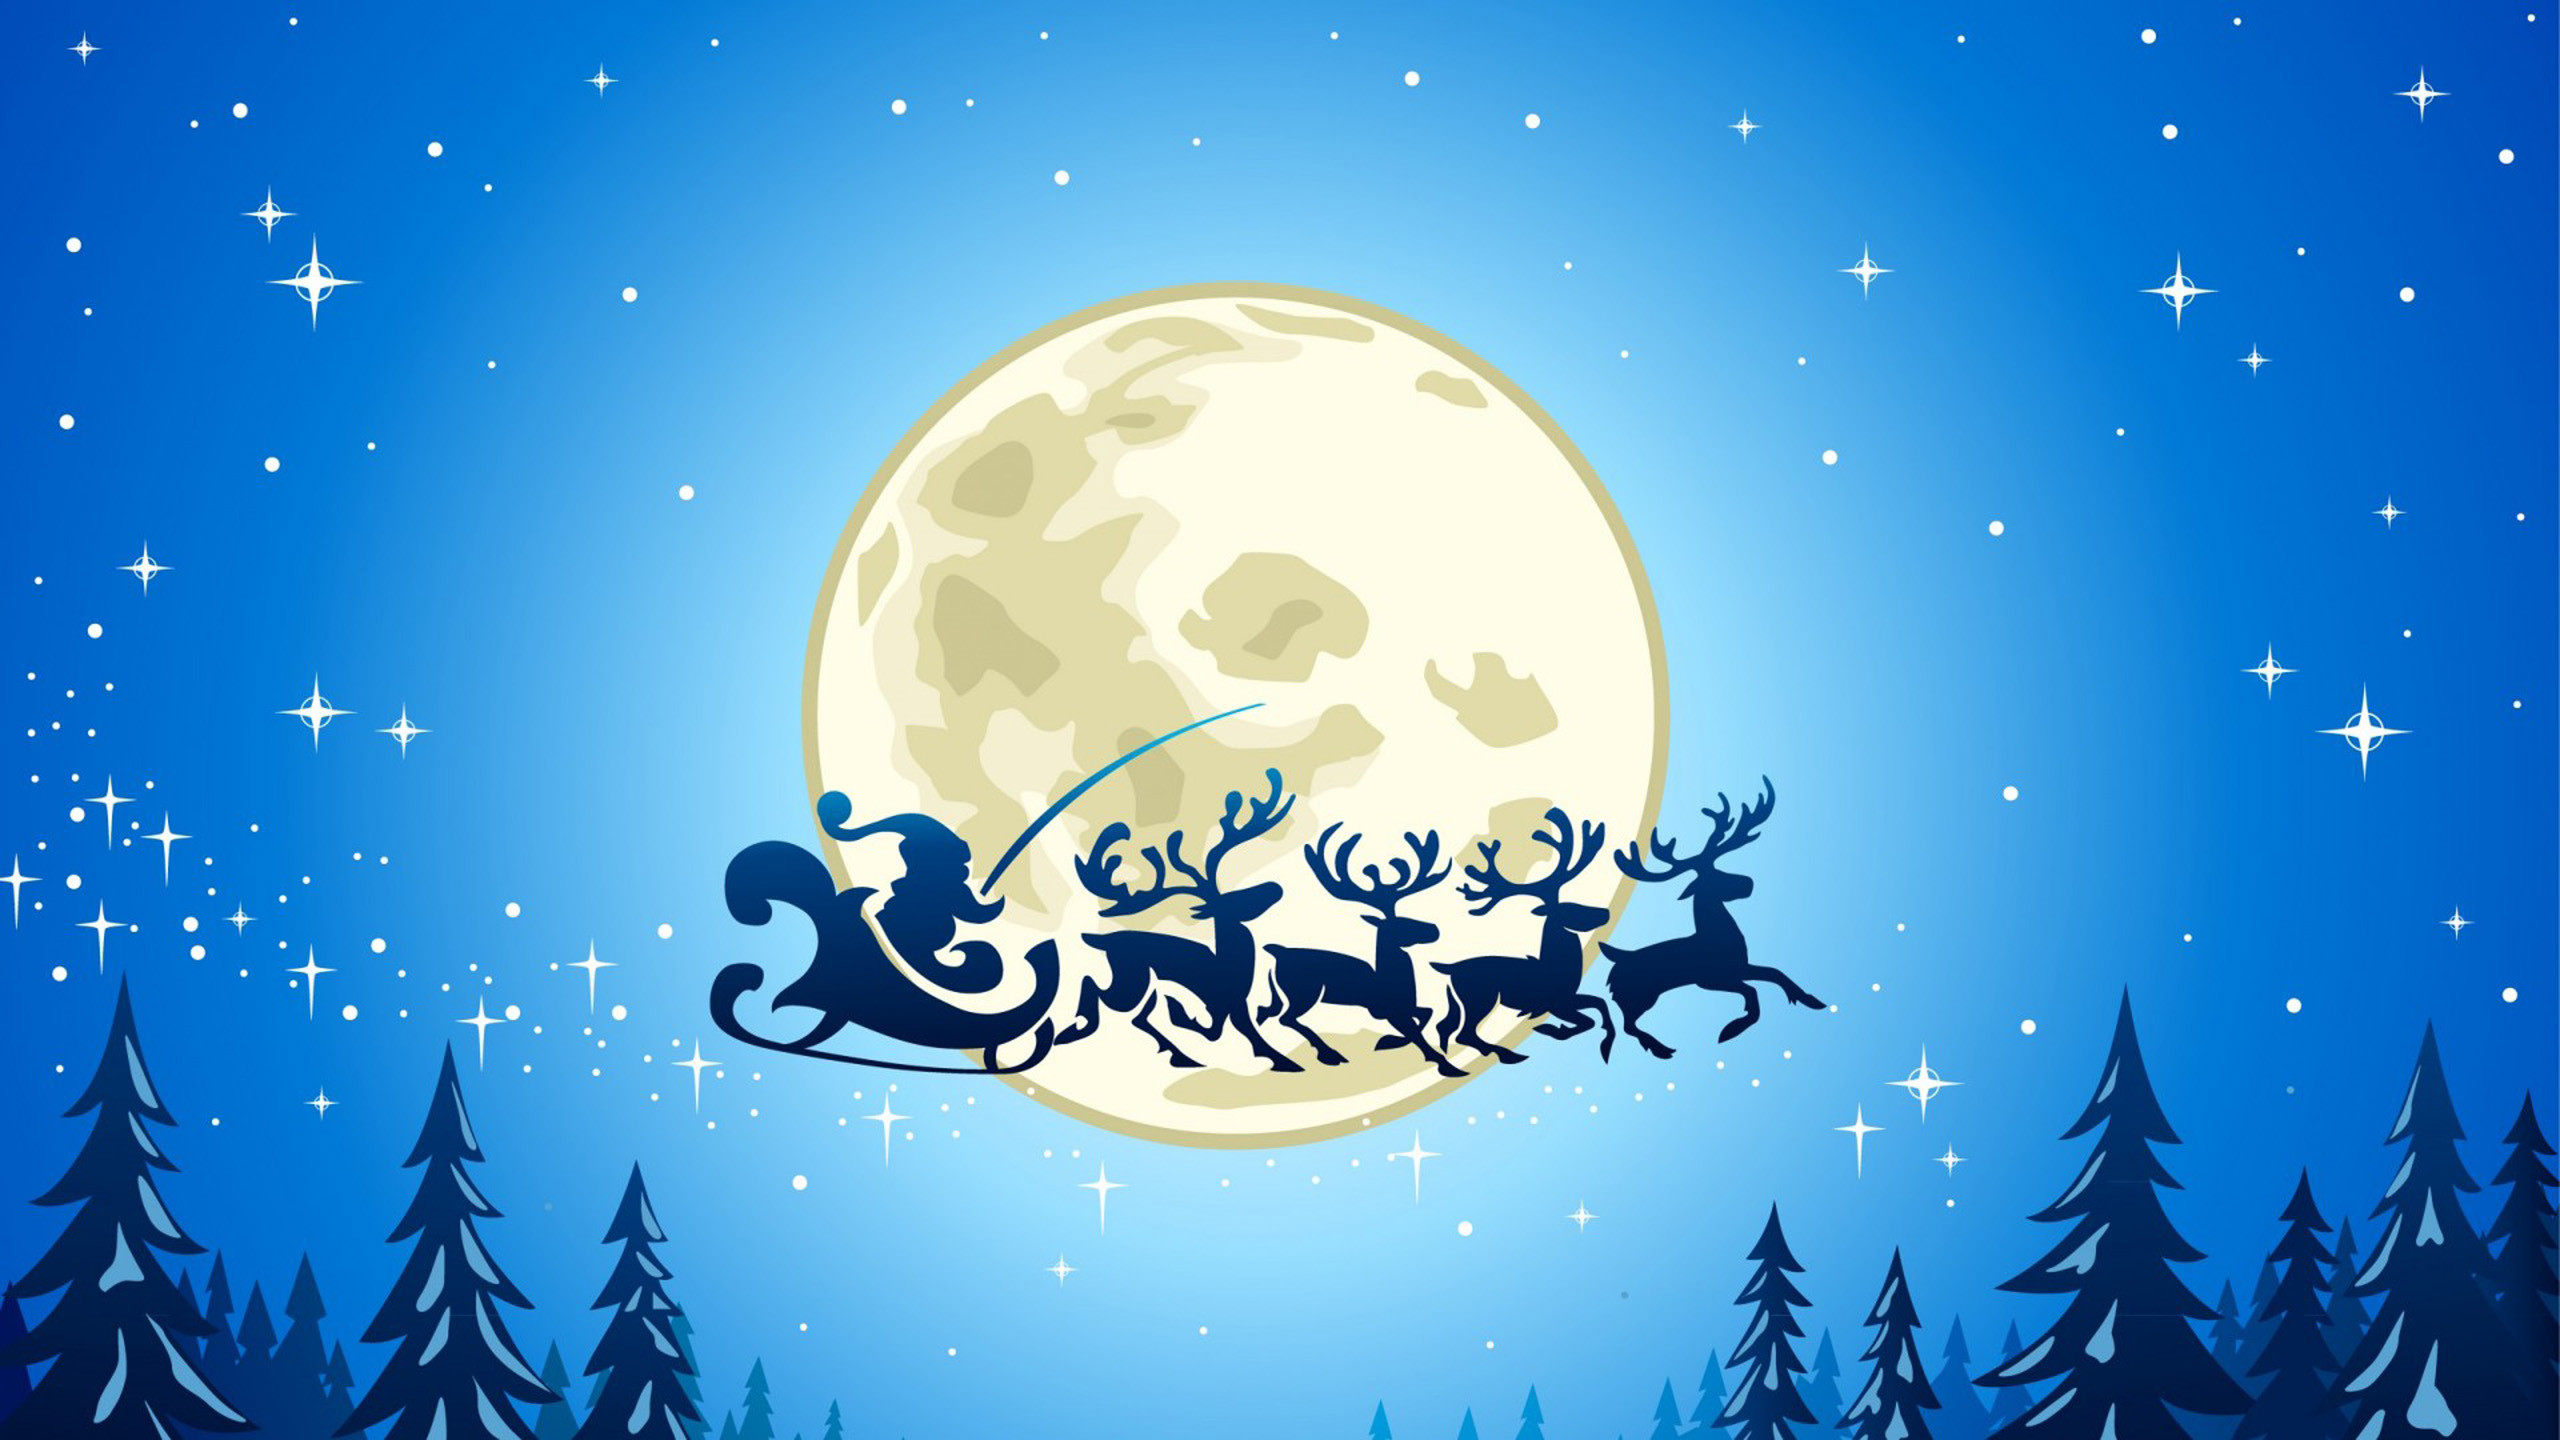 크리스마스 테마 벽지,하늘,크리스마스 이브,삽화,달,나무